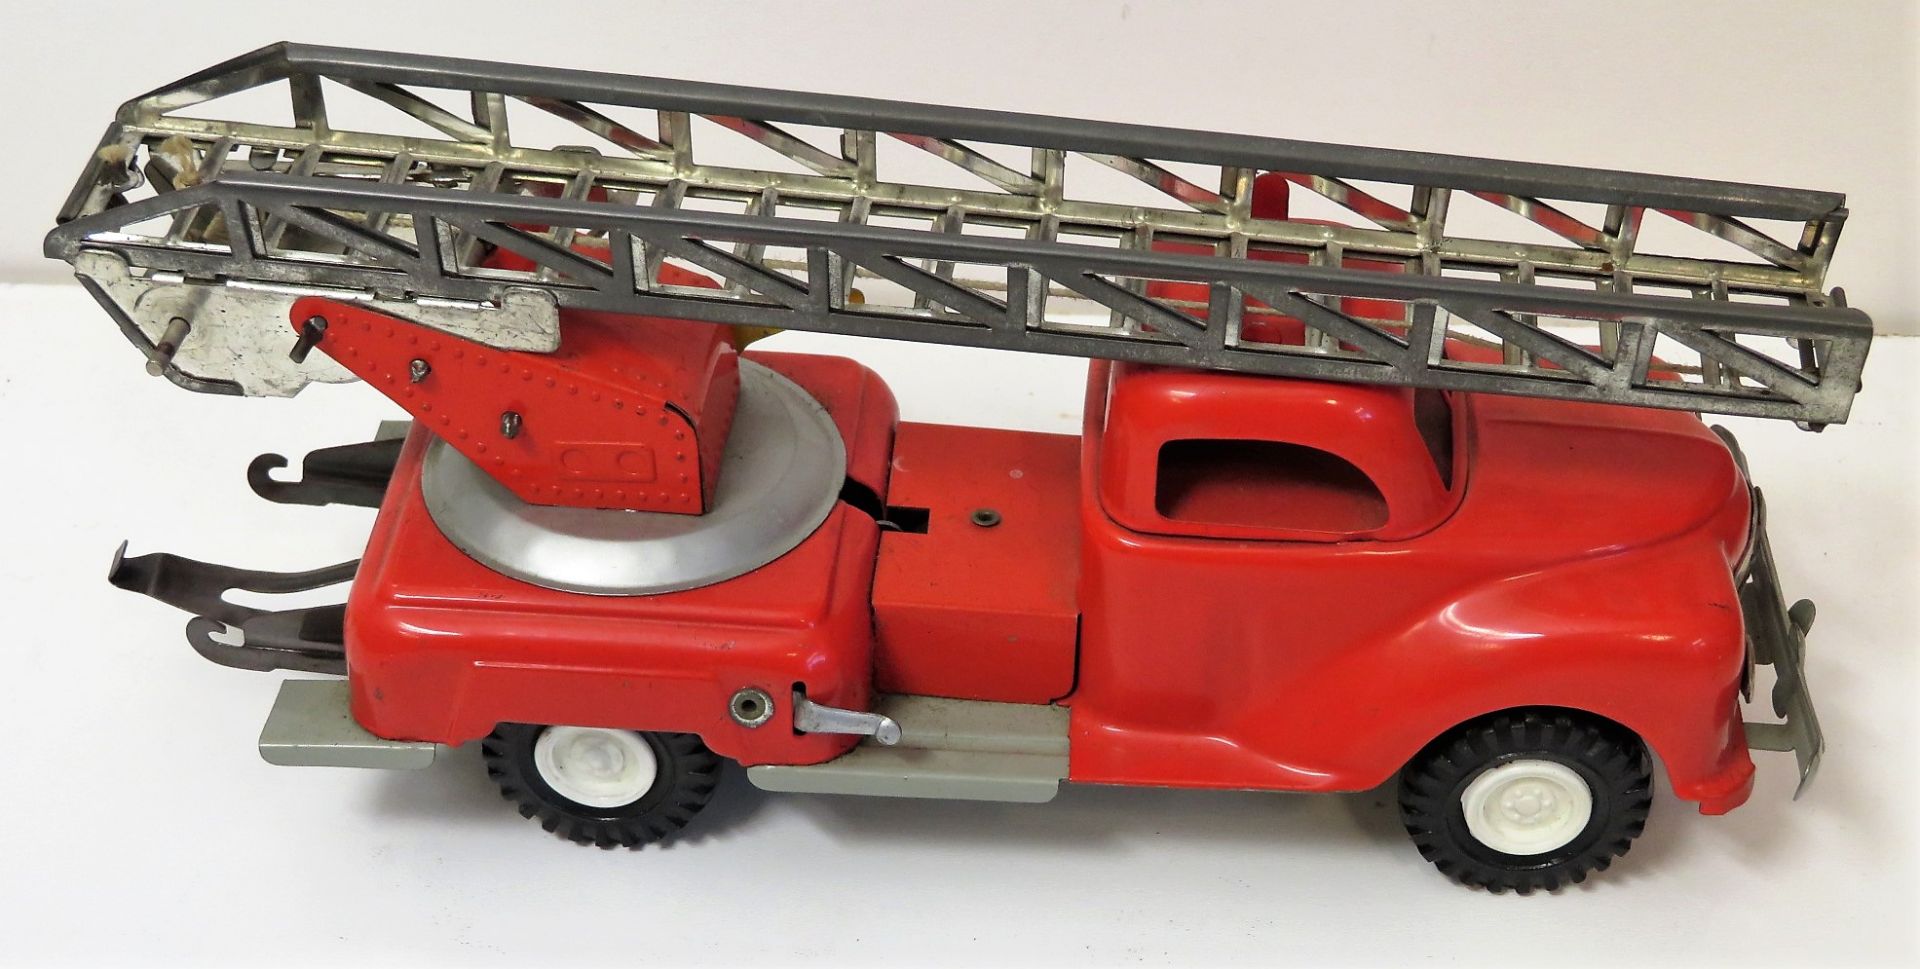 Feuerwehrauto mit Drehleiter, Gama Faun, Blech, Uhrwerkantrieb, 11 x 23 x 7,5 cm.